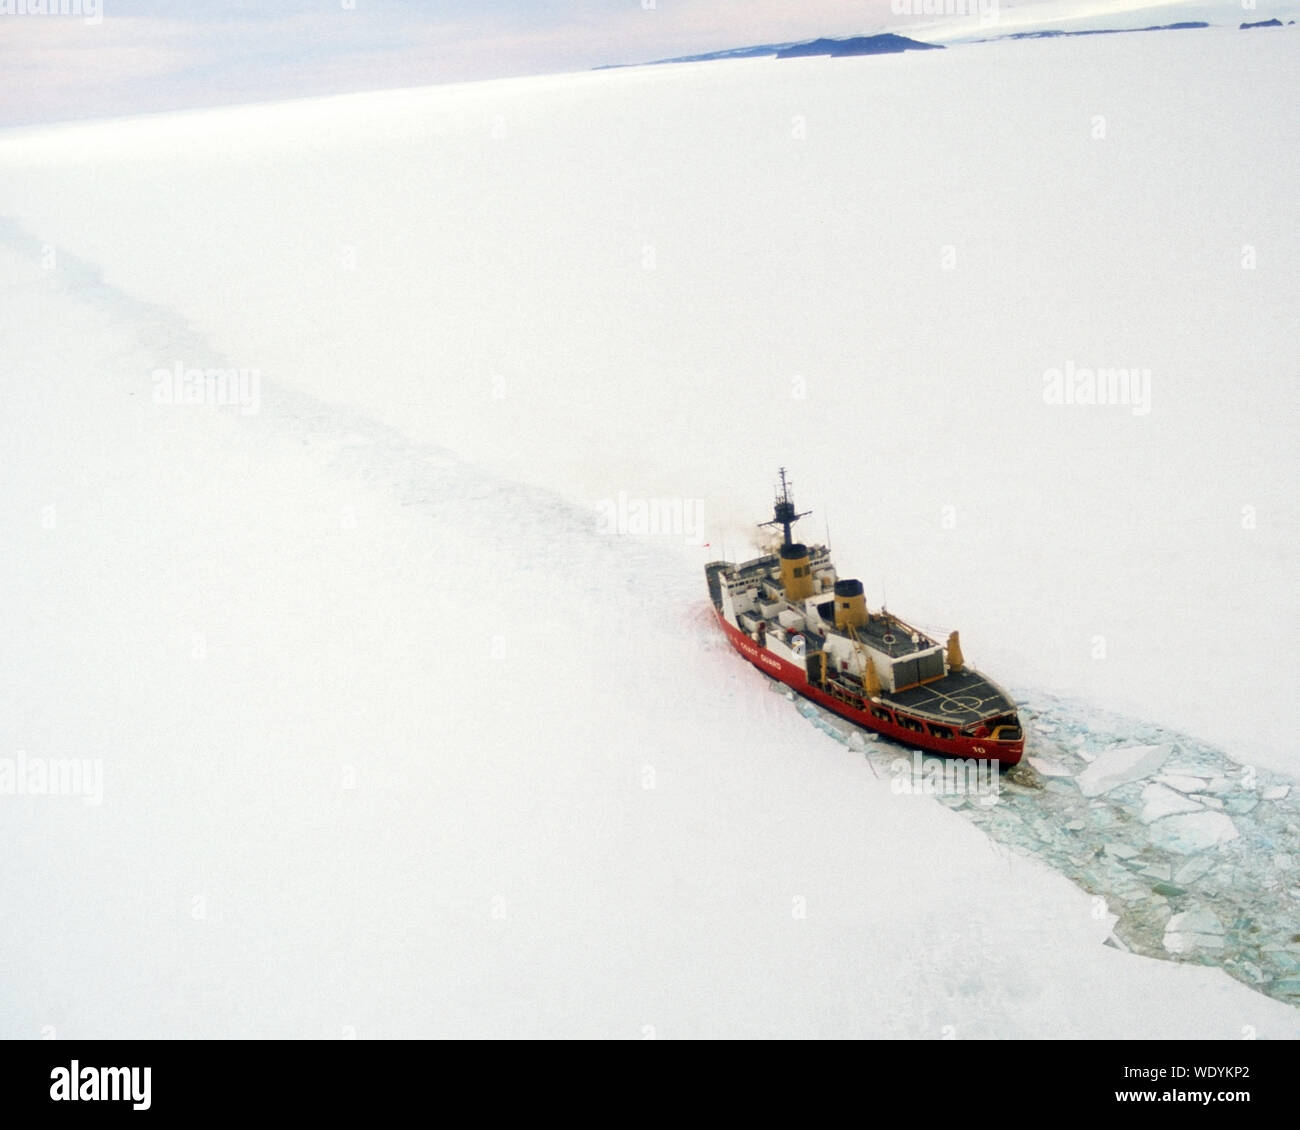 La Estrella Polar rompehielos, romper el hielo, el barco de la Guardia Costera estadounidense rompiendo el hielo en el Mar de Ross, en la Antártida. Foto de stock